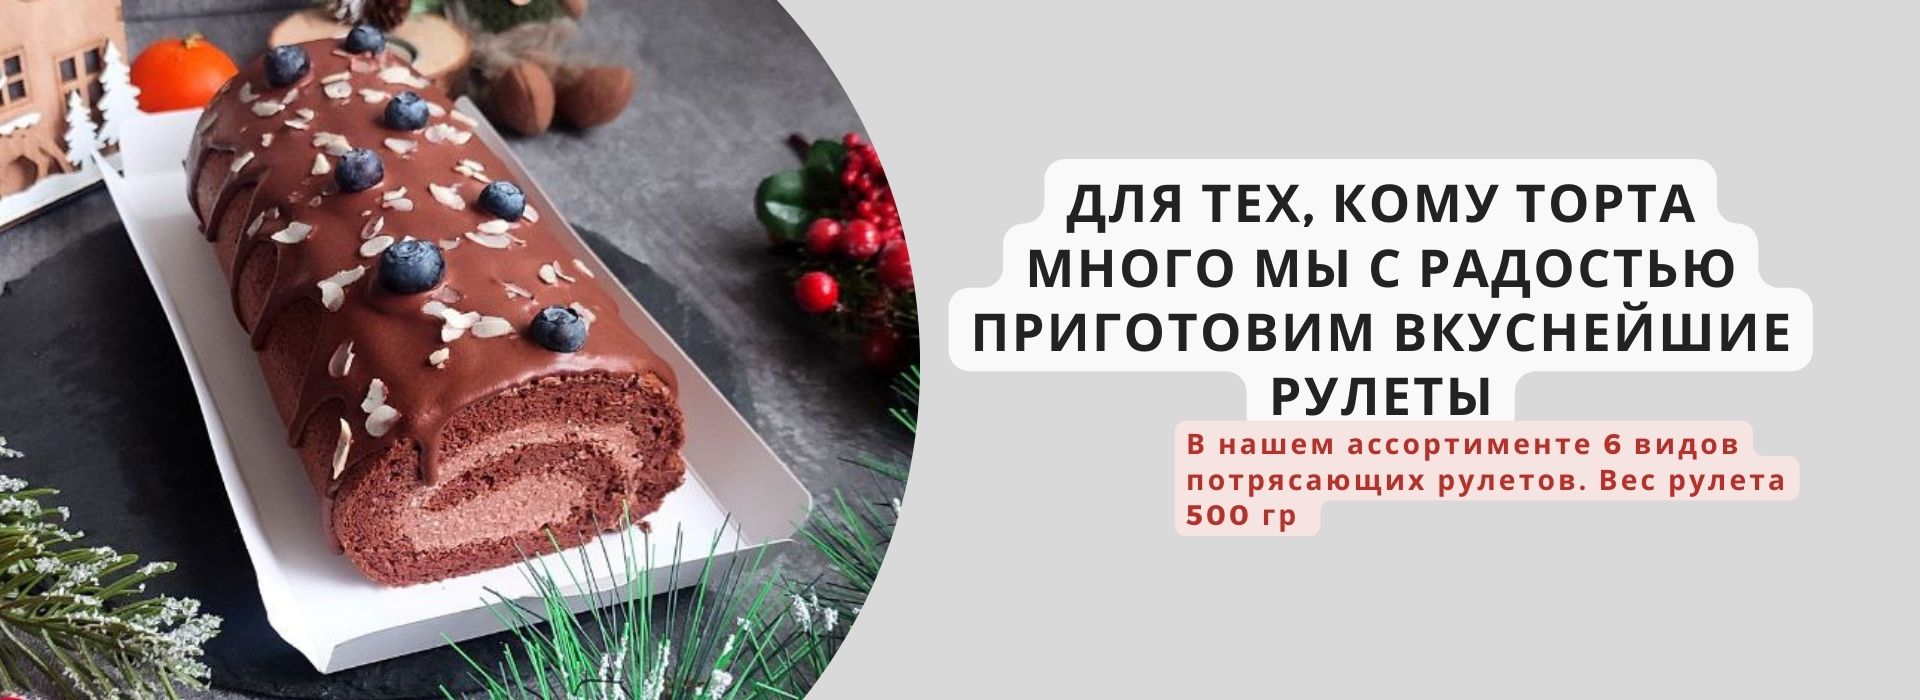 Магазин ПП тортов Без сахара в Сургуте: фитнес-торты, чизкейки и  низкокалорийные десерты на заказ.